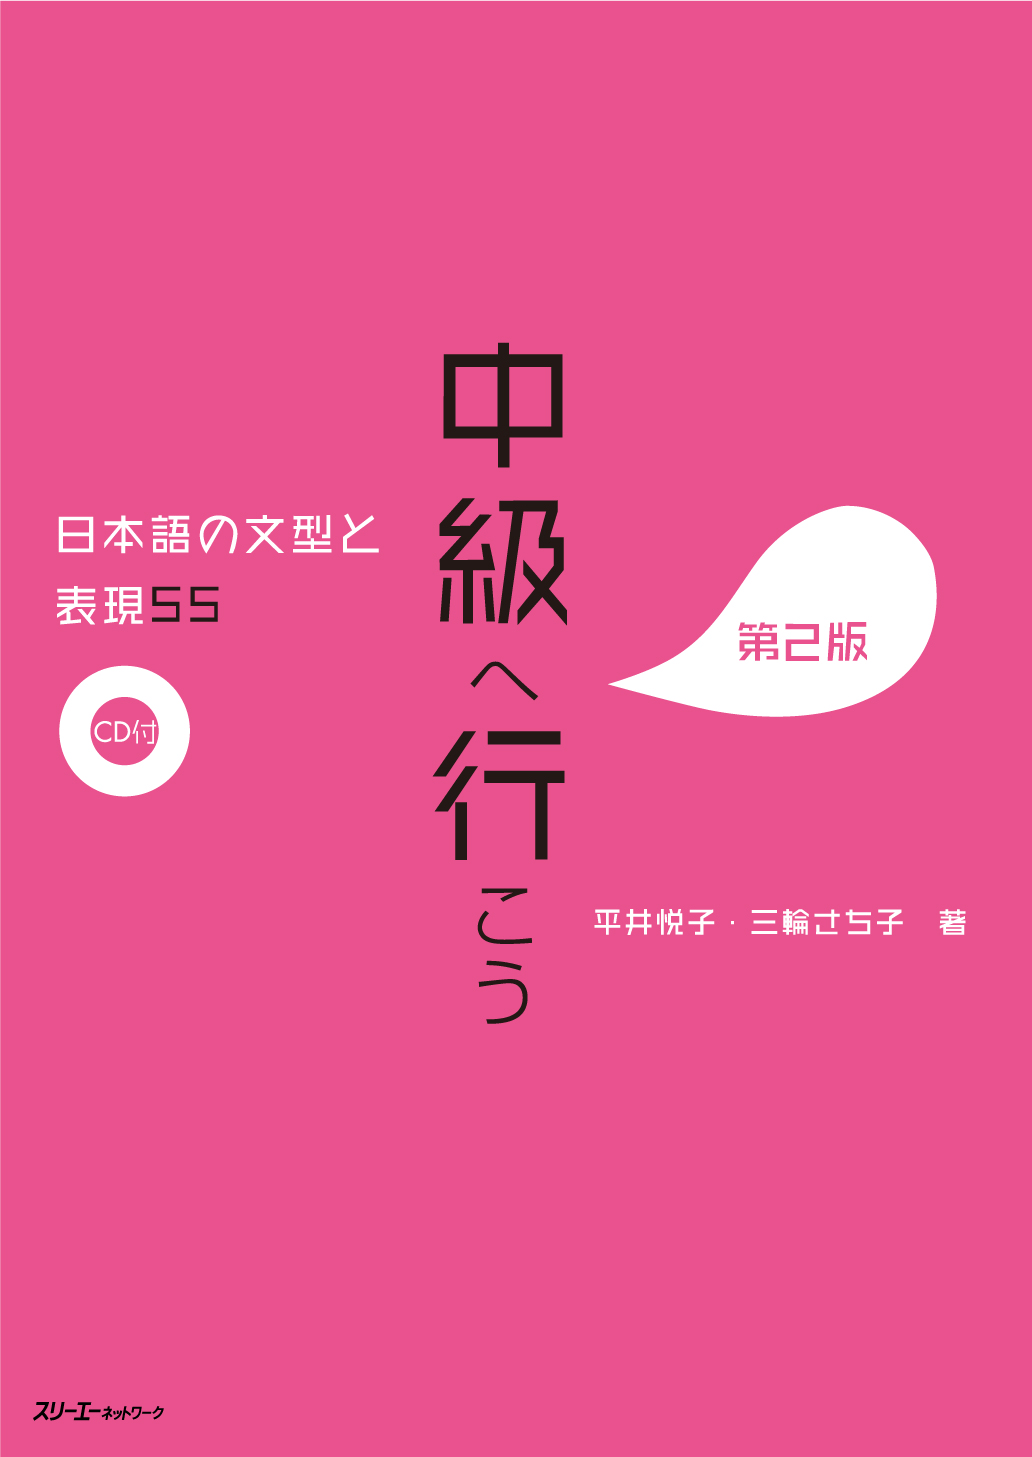 【電子版】販売開始のお知らせ 『みんなの日本語 初級 標準問題集』 『中級へ行こう』『中級を学ぼう　中級前期』